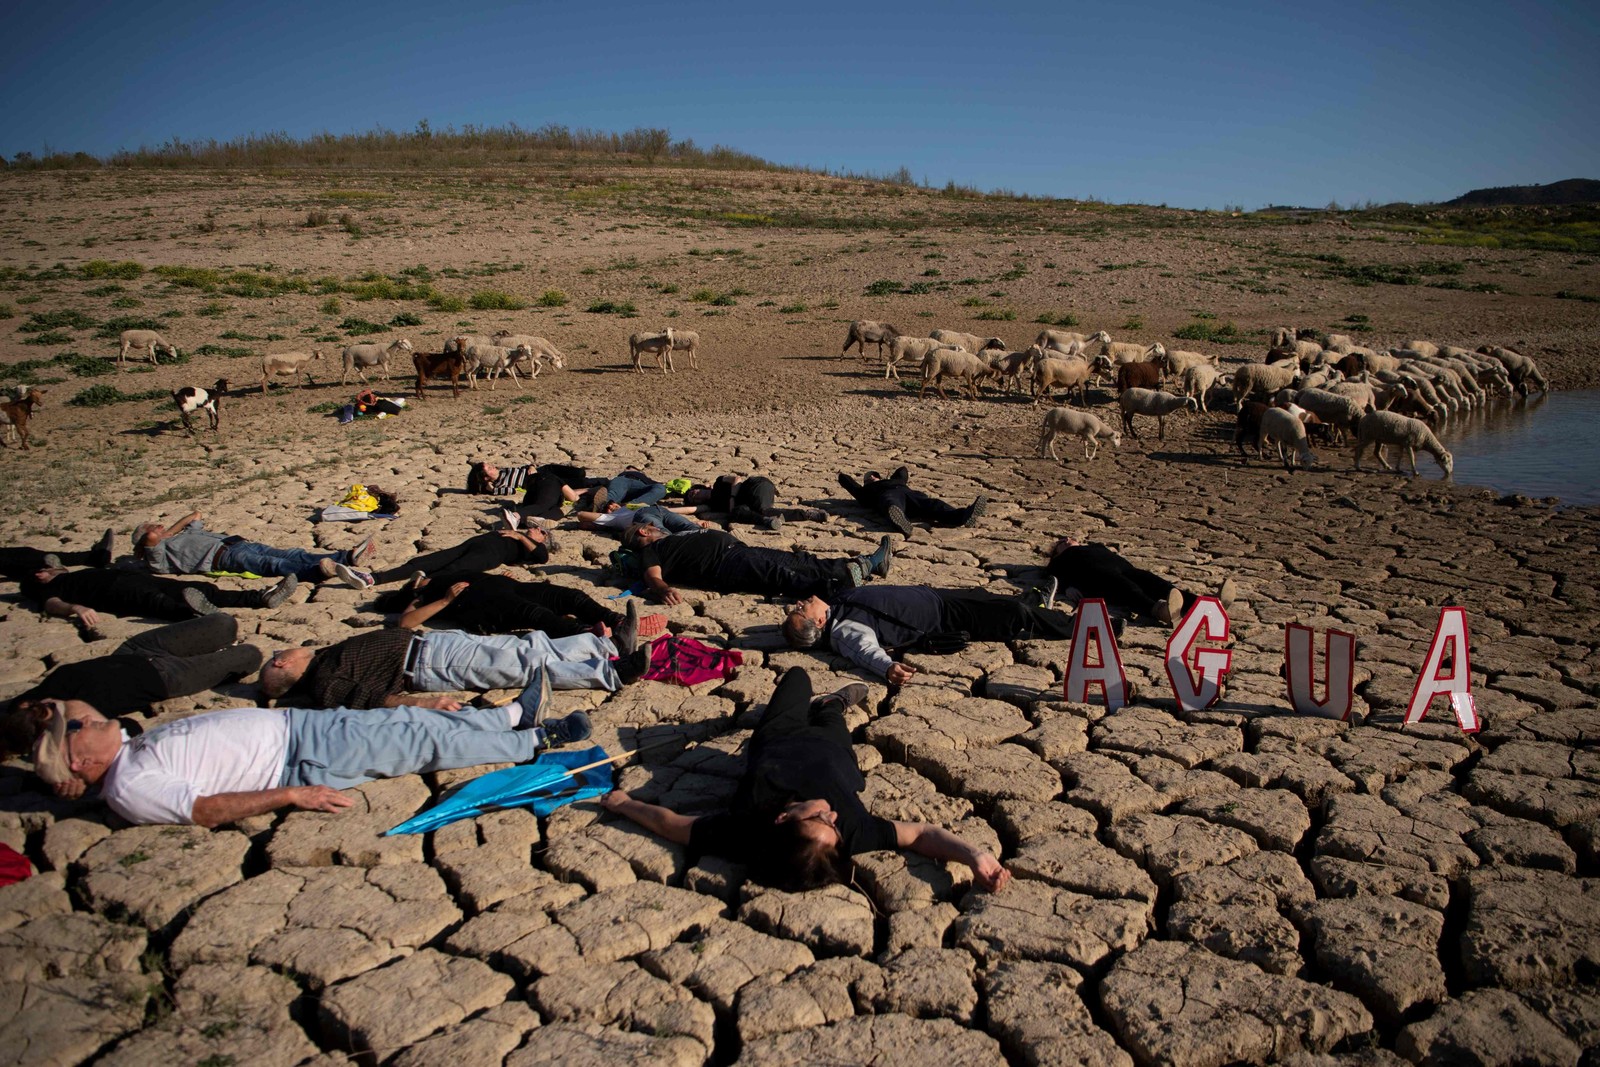 Ativistas deitam no chão seco perto de ovelhas durante uma manifestação ambiental da Ação Climática Global, pedindo ação climática no reservatório La Vinuela, na província de Málaga — Foto: JORGE GUERRERO/AFP